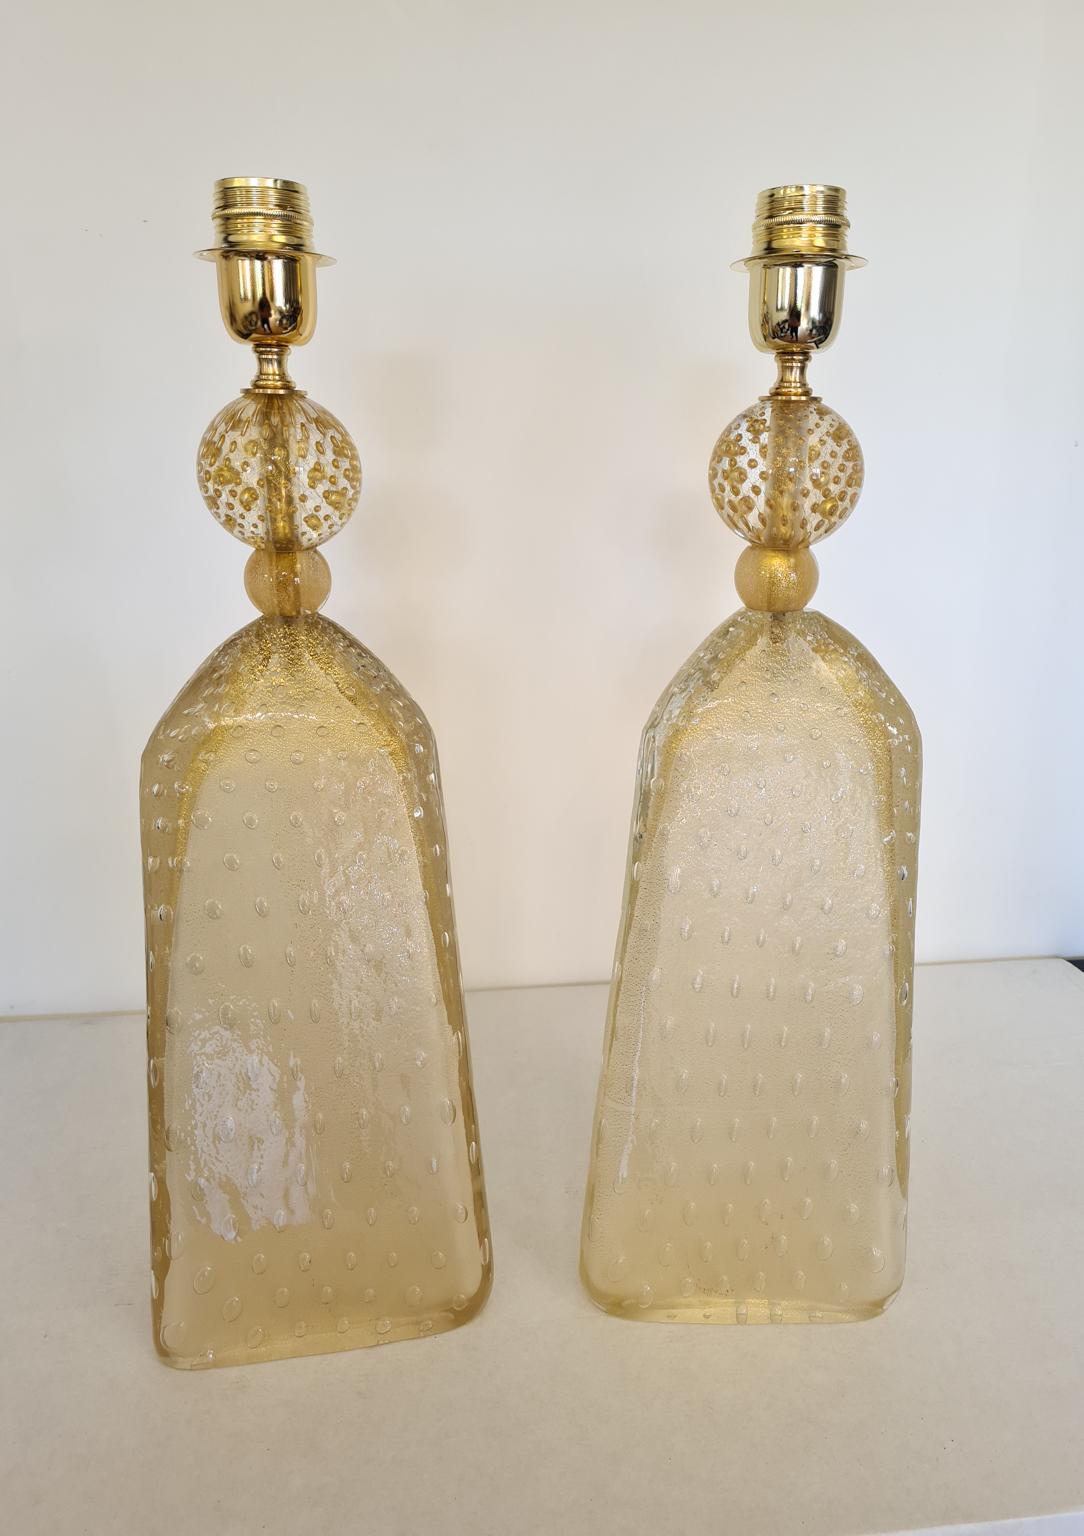 Exklusives Paar Tischlampen aus Murano-Glas in sandgestrahltem Goldkristall.
Die Lampen haben ein Verfahren, das Balloton genannt wird, d.h. untergetauchte Glasblasen.
Dreieckige Lampen mit goldener Kugel.
Die Produkte sind vollständig